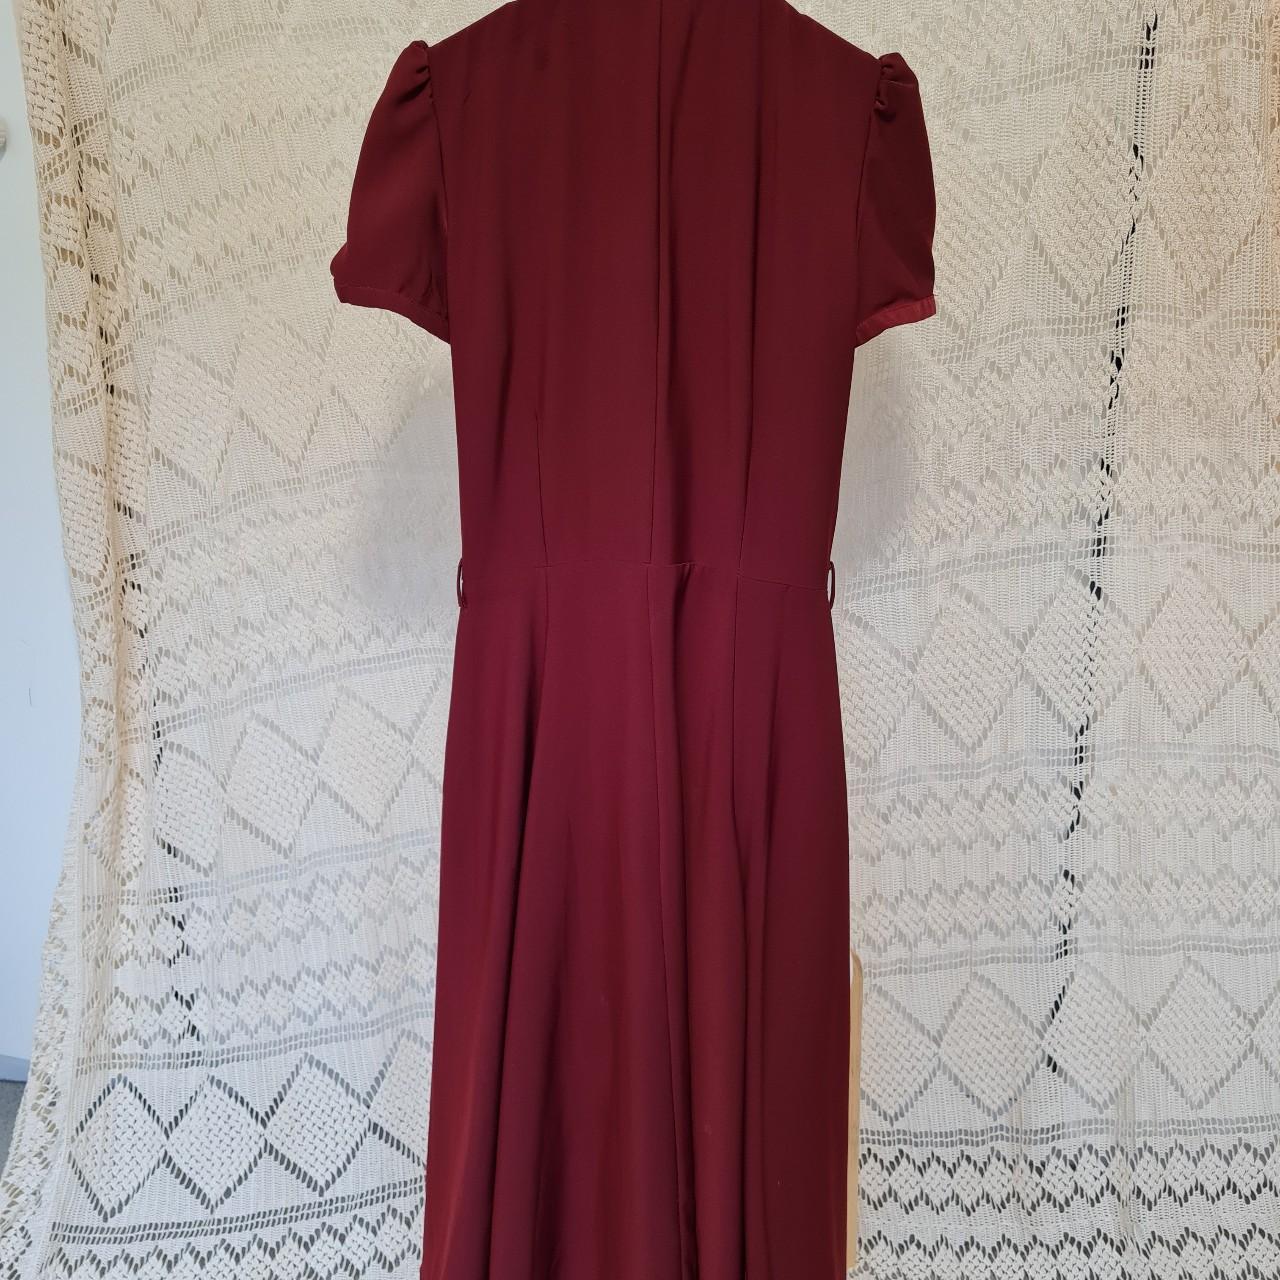 Collectif 1940s deep red pinup dress. Knee-length,... - Depop